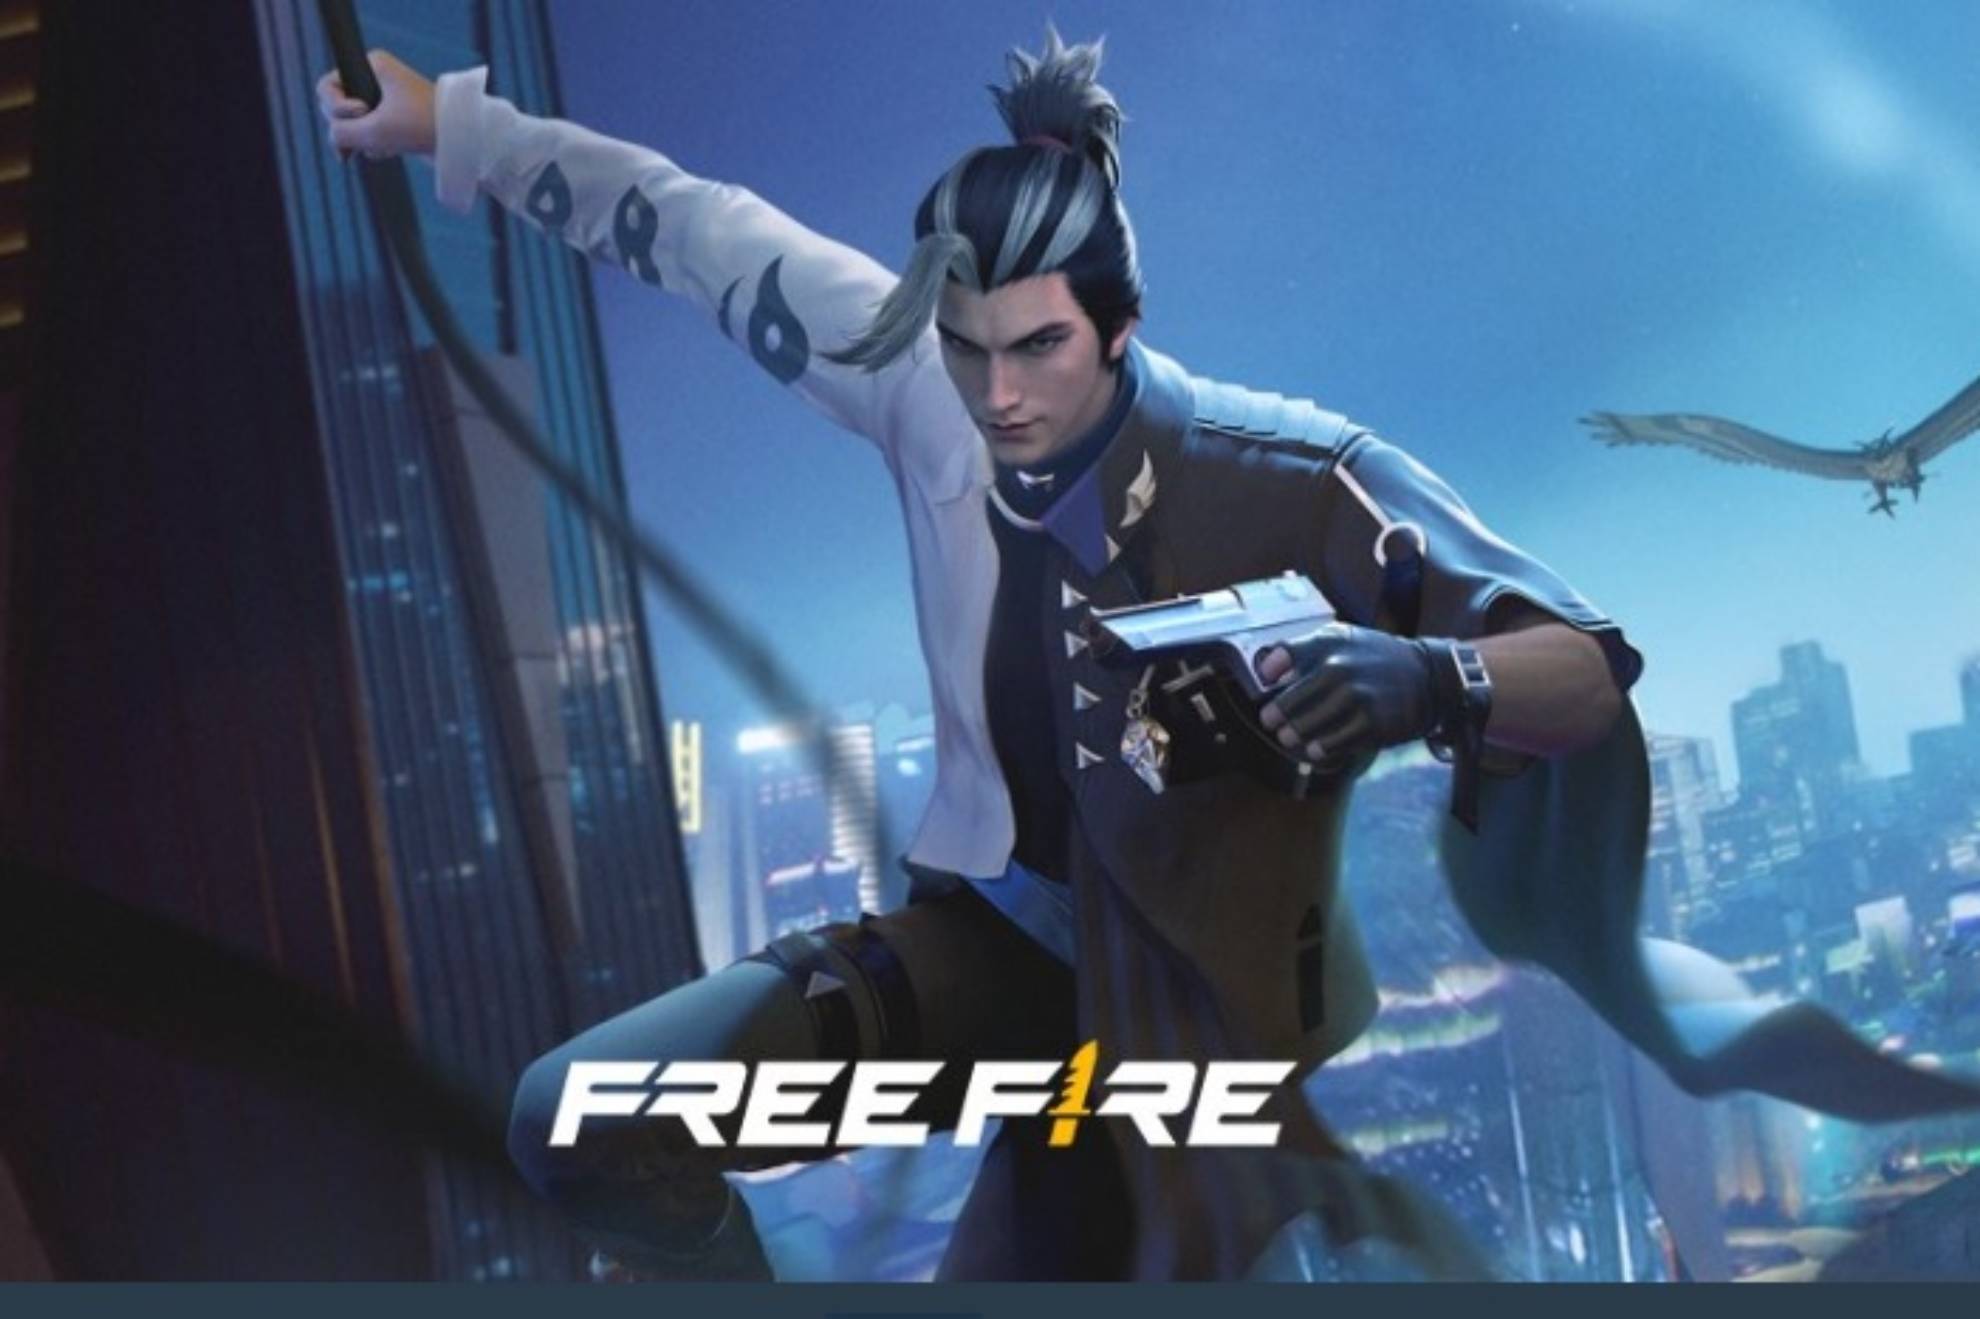 Free Fire es de los videojuegos móbiles mas populares entre los gamers